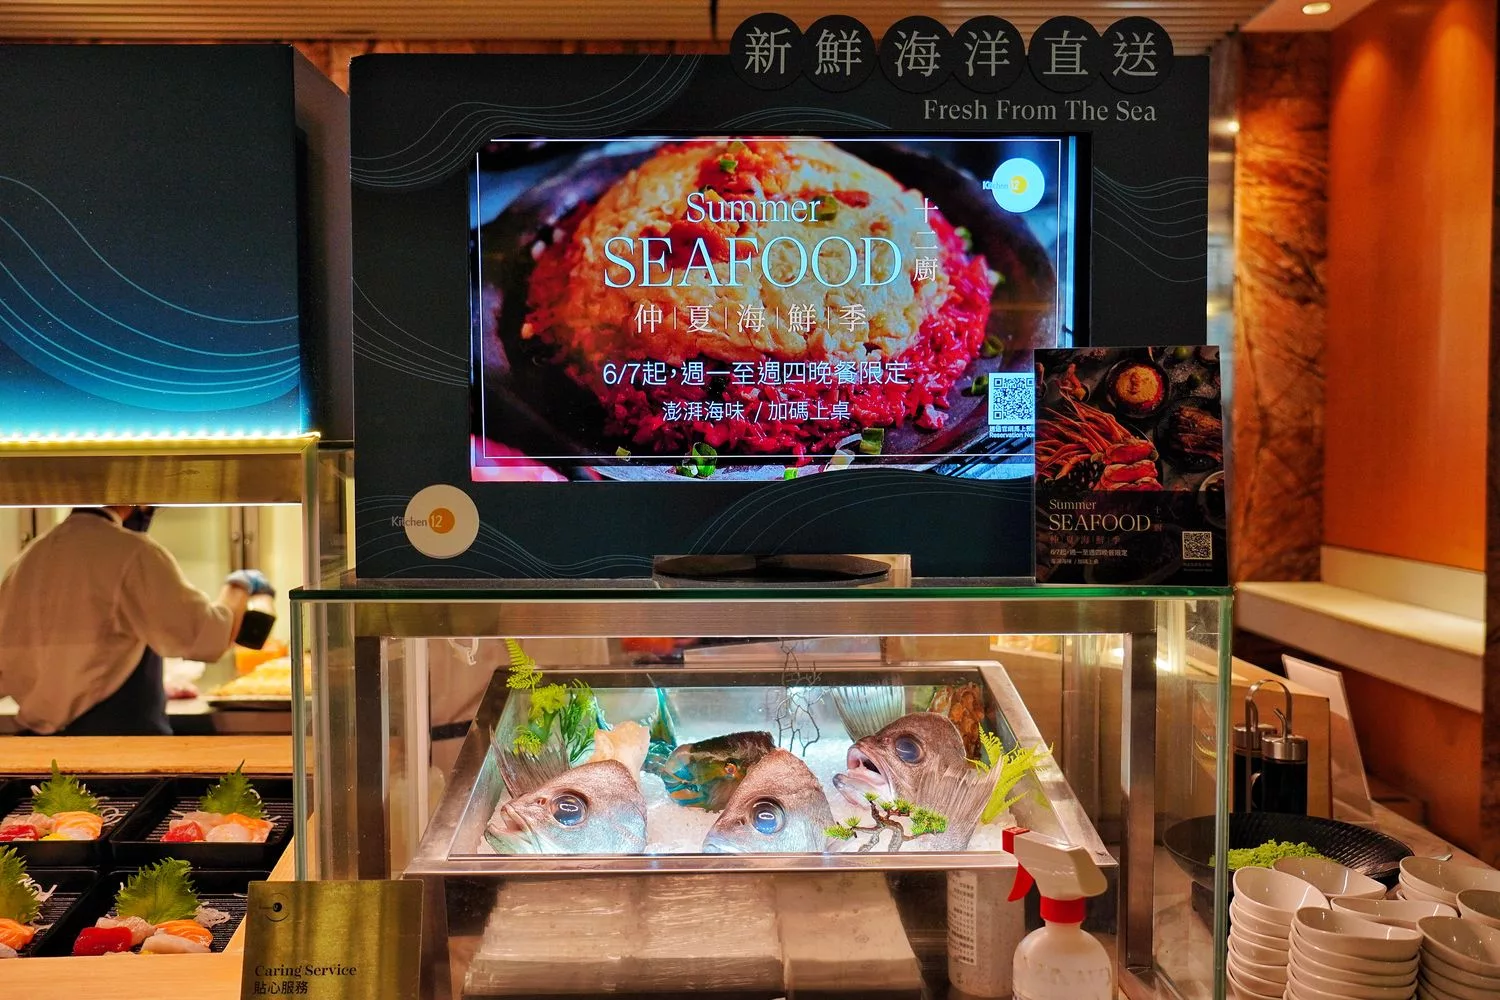 【 12 廚】 台北喜來登大飯店 十二廚 Kitchen 12，爐烤牛排現流海鮮百種料理吃到飽! @混血珊莎的奇幻旅程